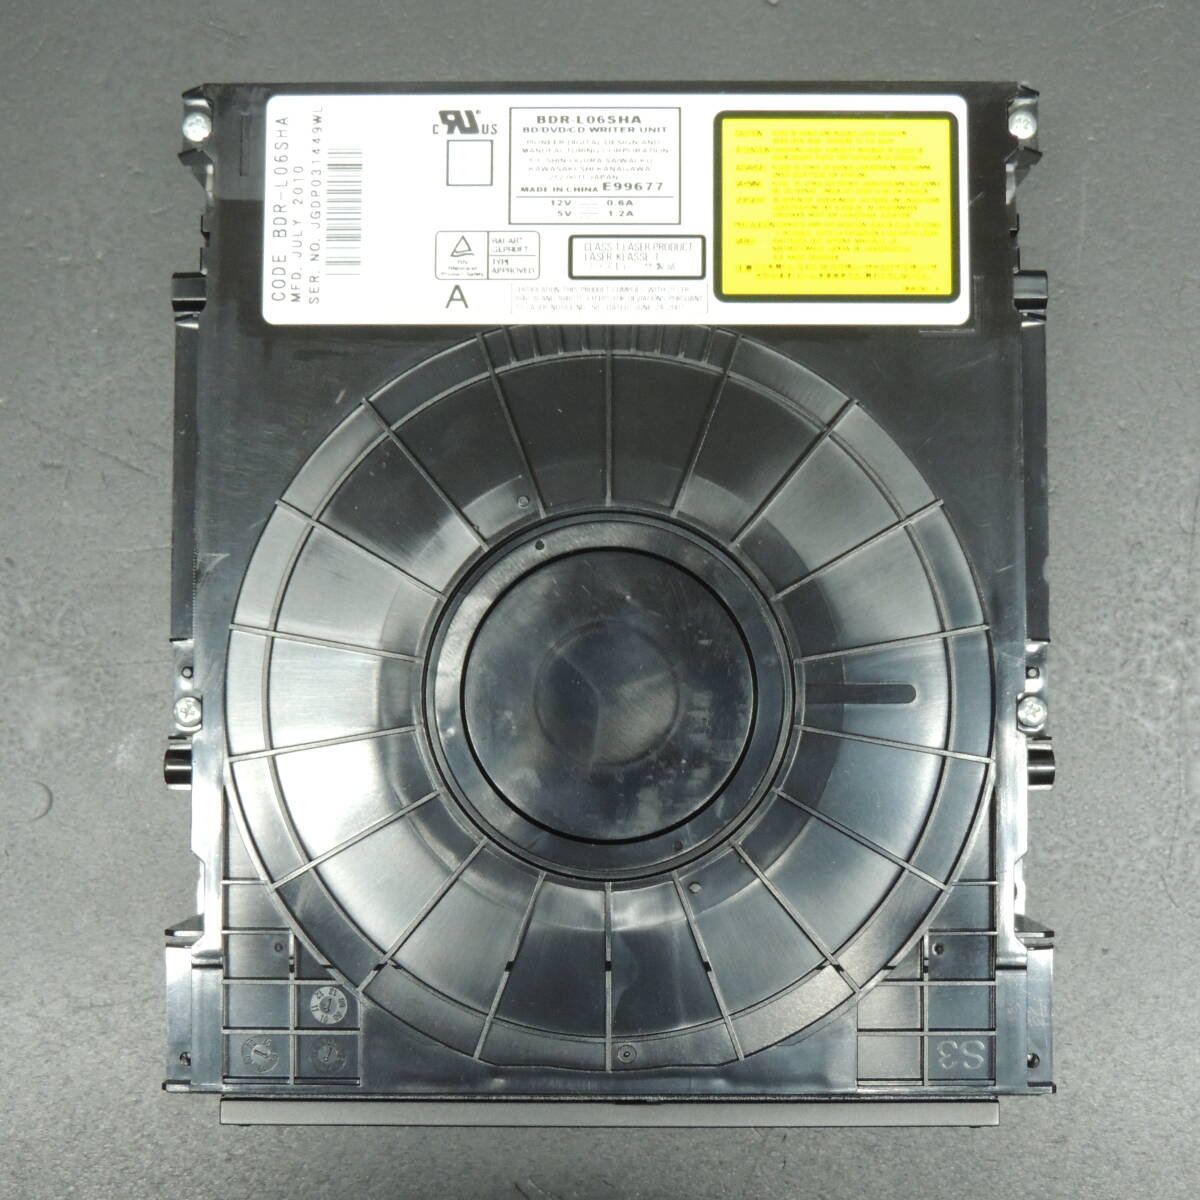 【ダビング/再生確認済み】SHARP シャープ Blu－rayドライブ BDR-L06SHA 換装用/交換用 管理:キ-12の画像1